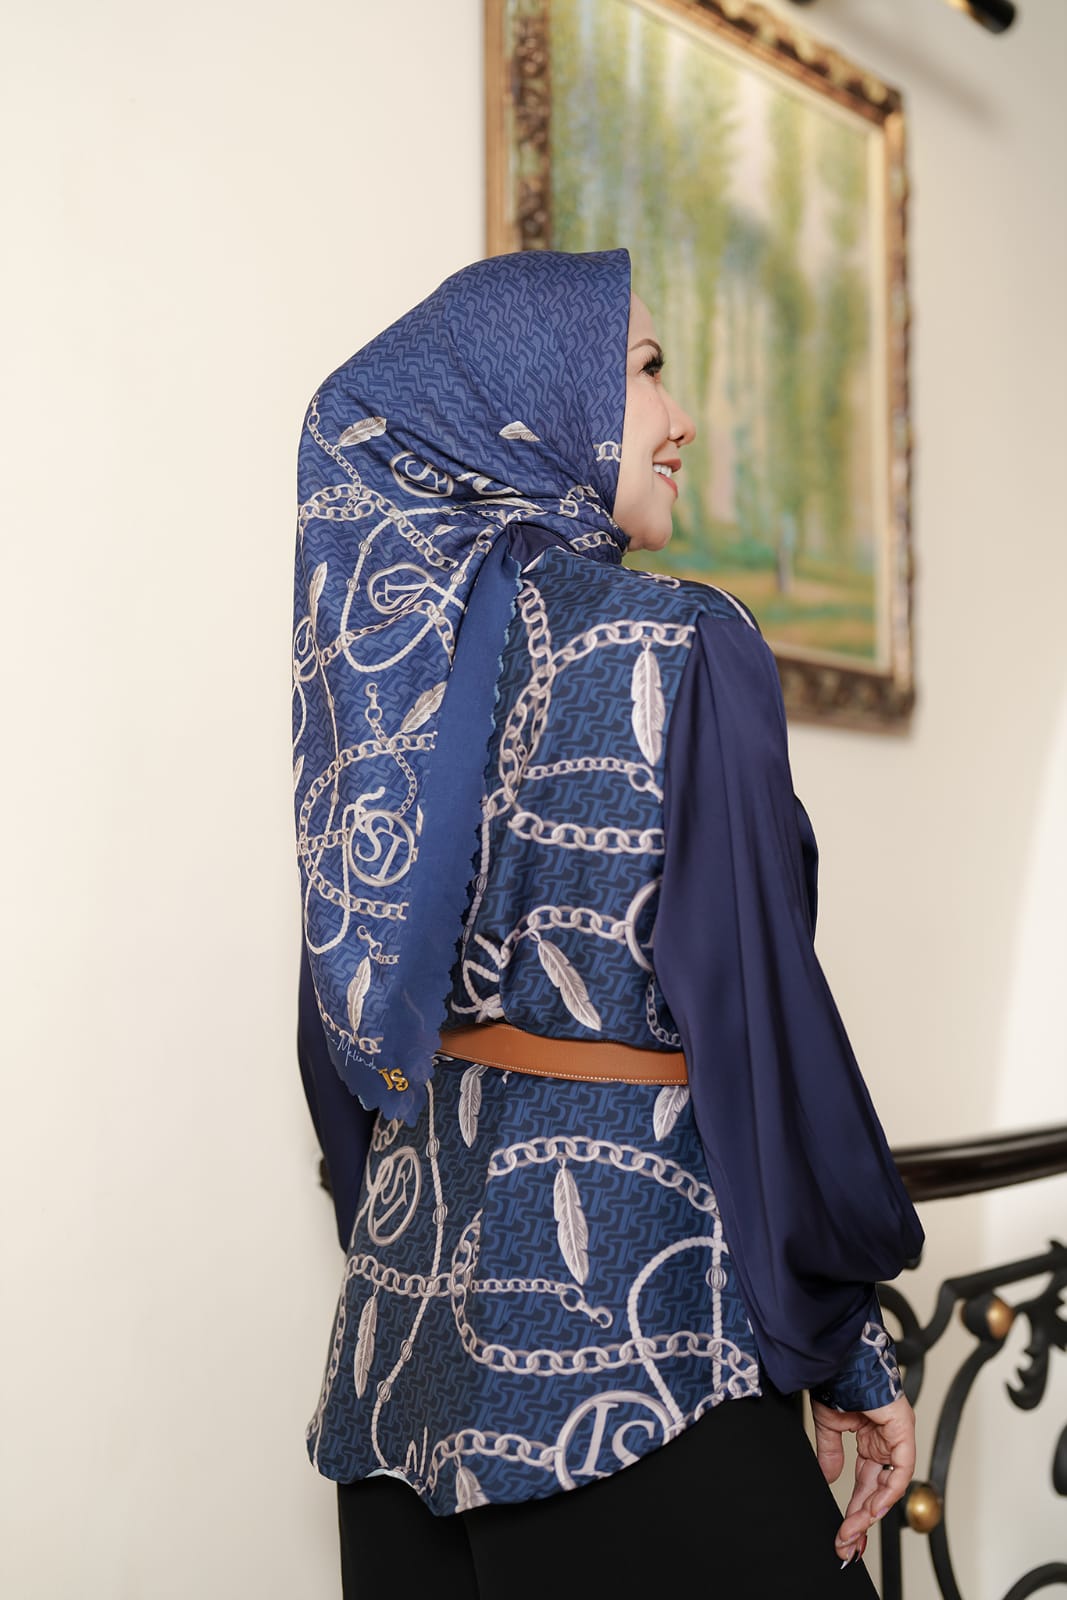 Venna Melinda Rilis Koleksi Baju Muslim, Gaet Brand La Sabelle